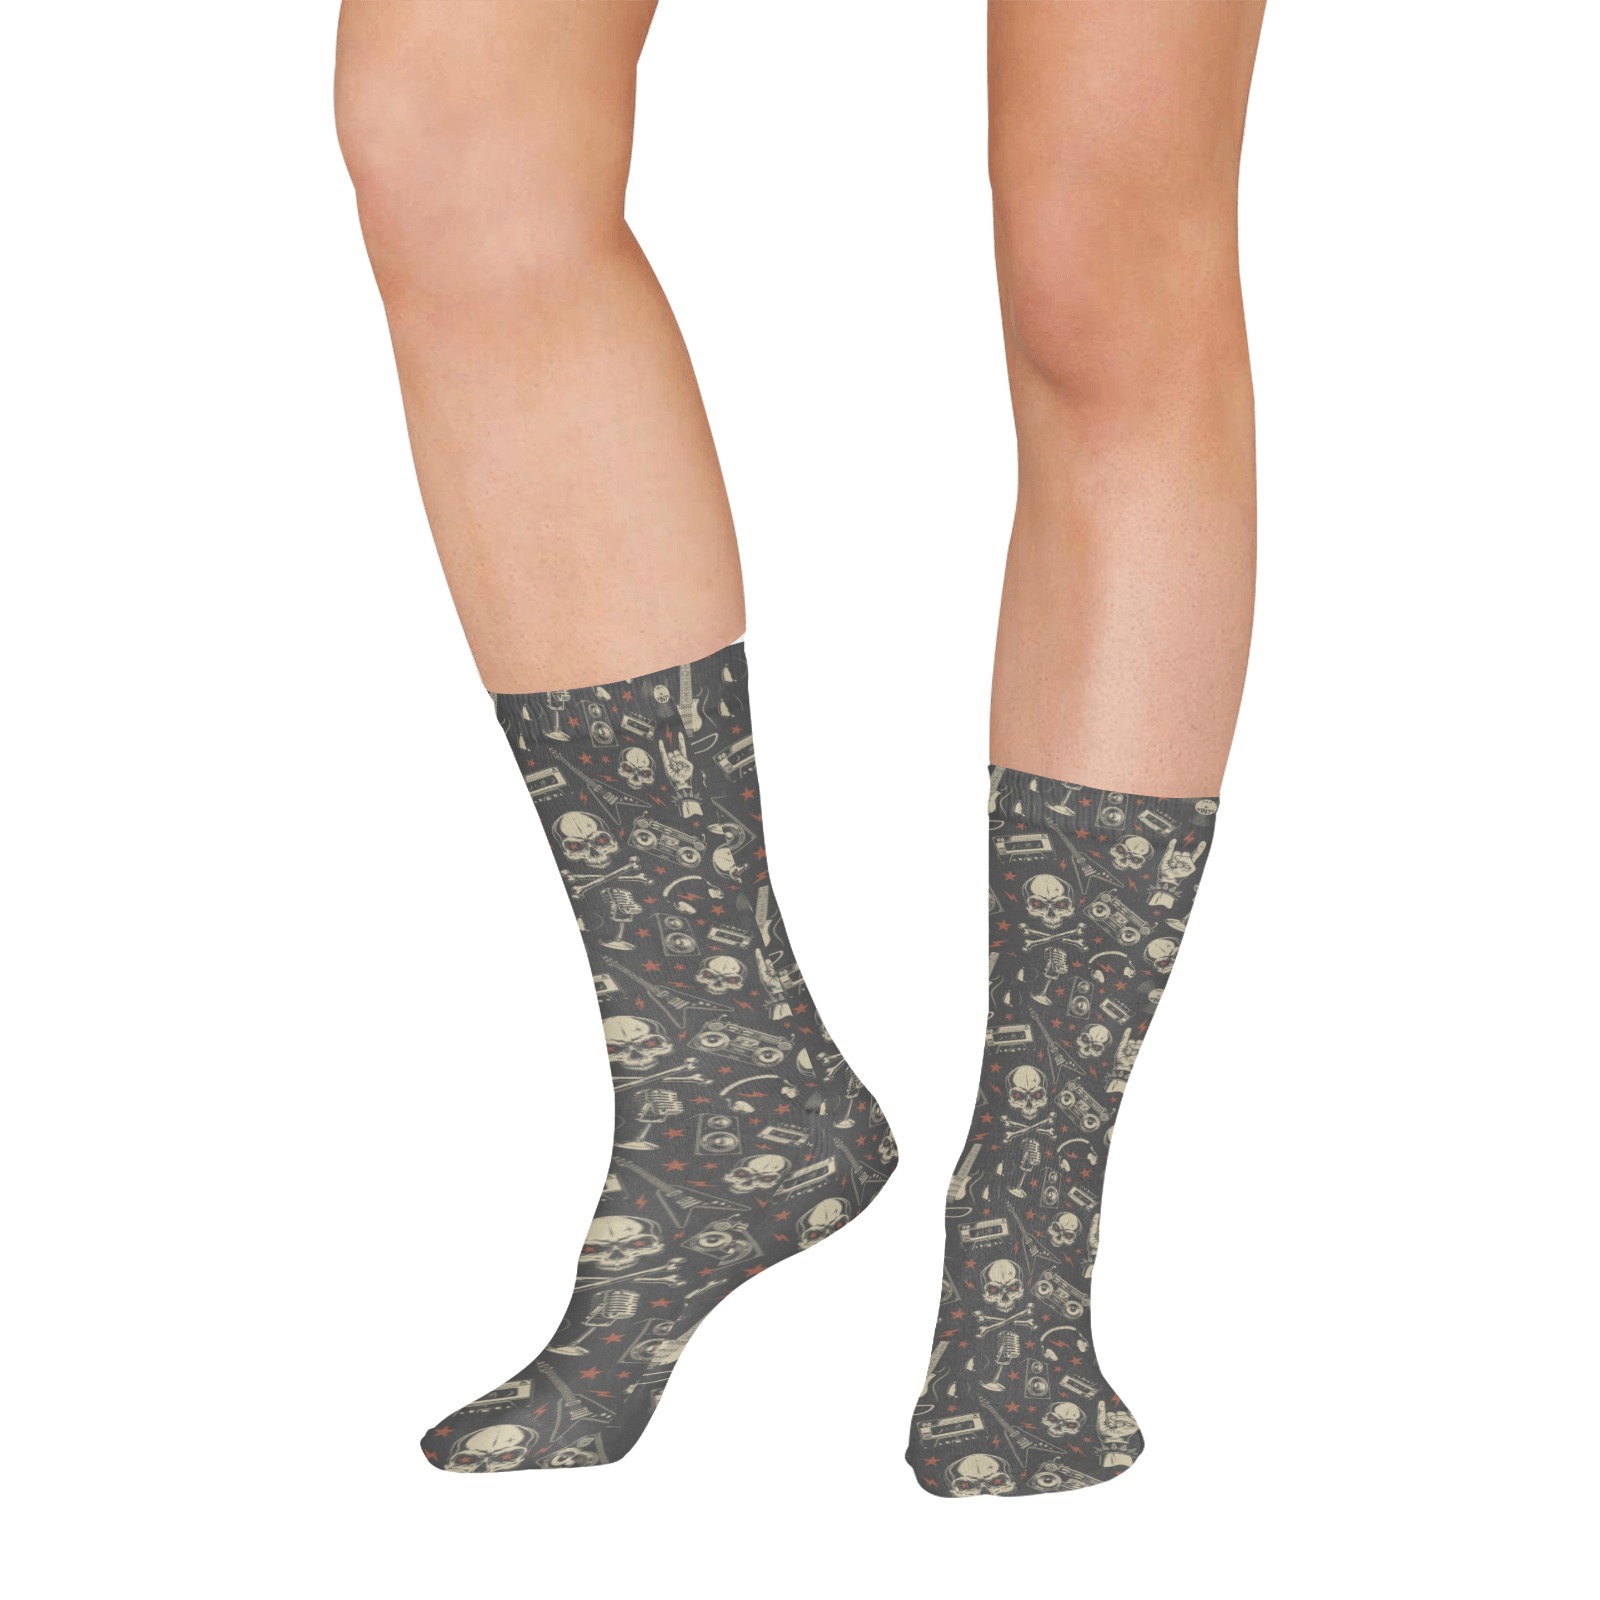 Grunge Seamless Pattern All Over Print Socks for Women